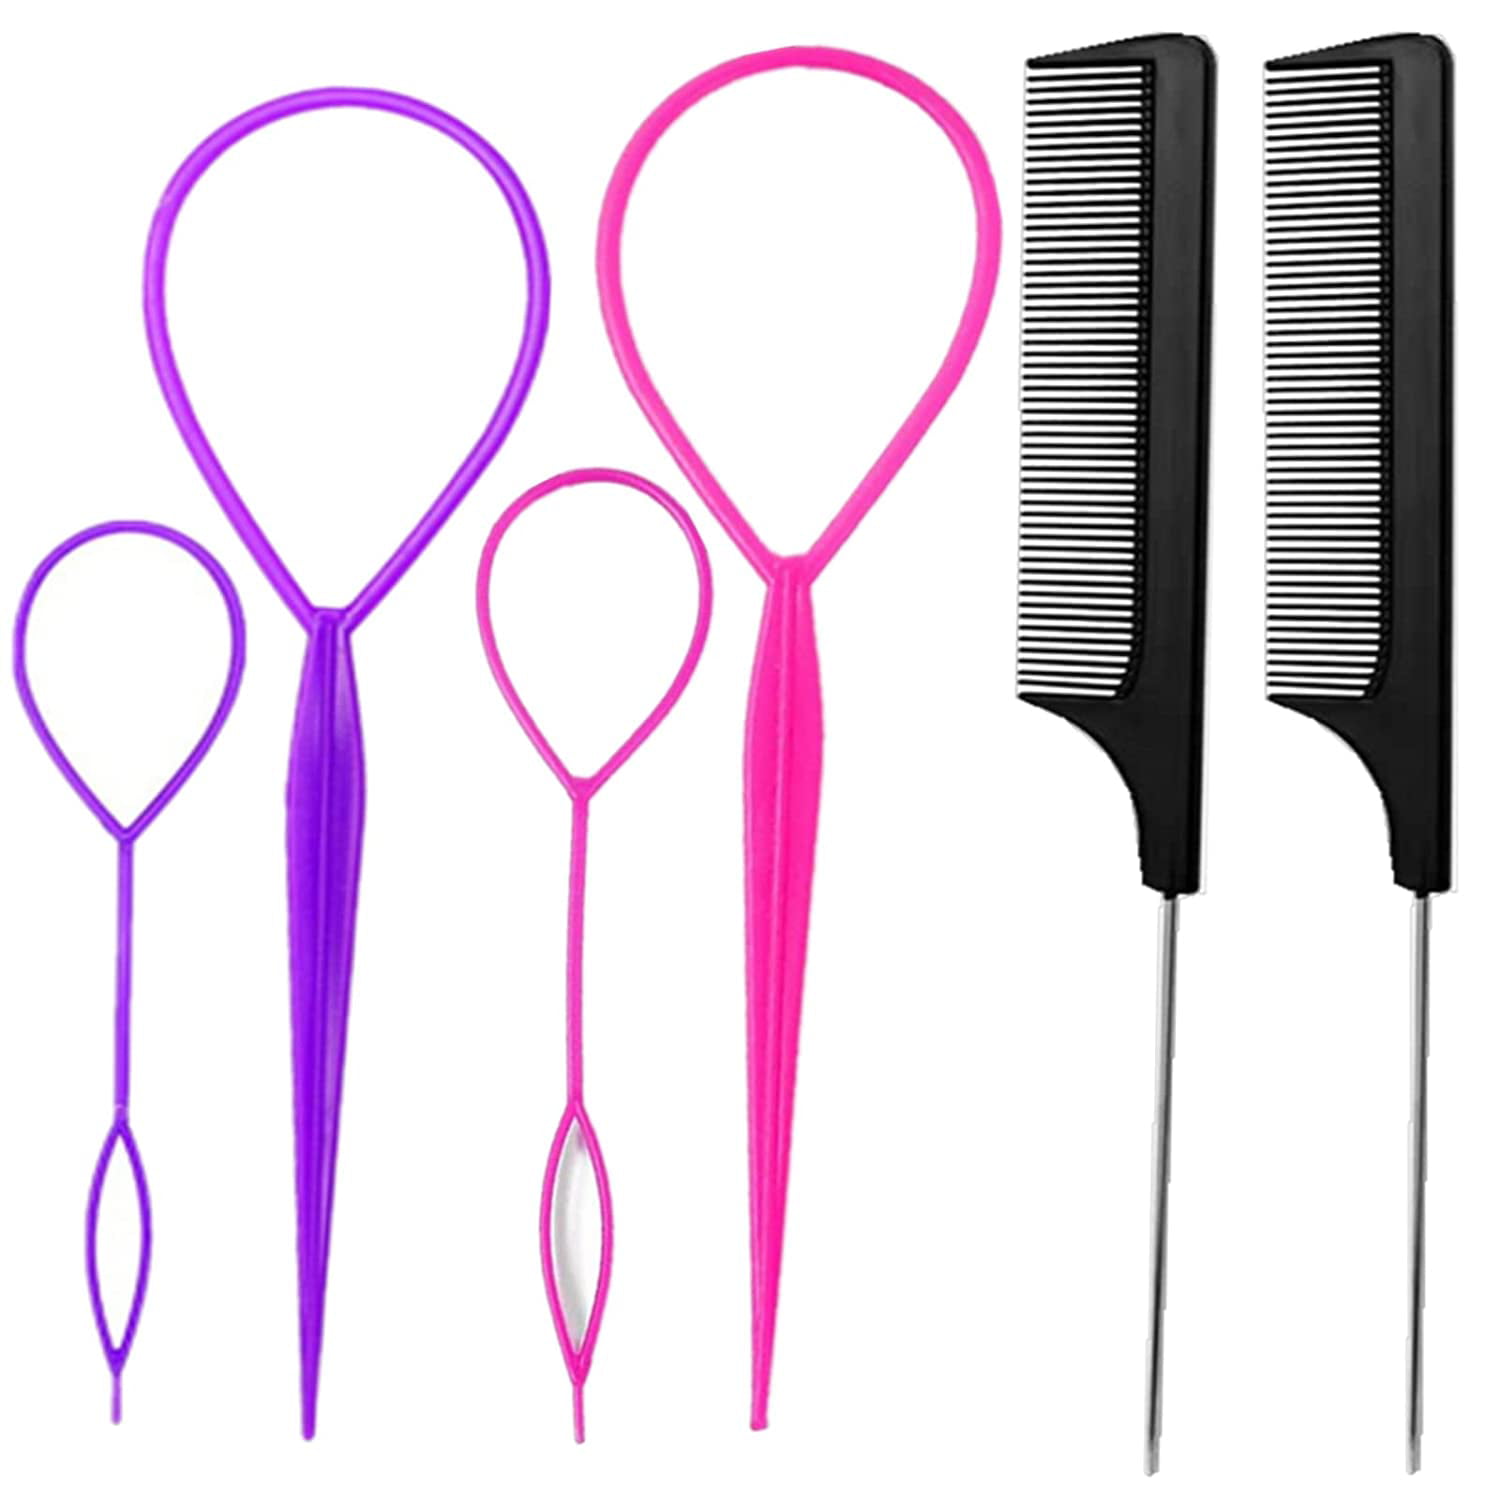 Hair Tail Tools, 6 Pcs Topsy Hair Loop Styling Set, 4 Pcs French